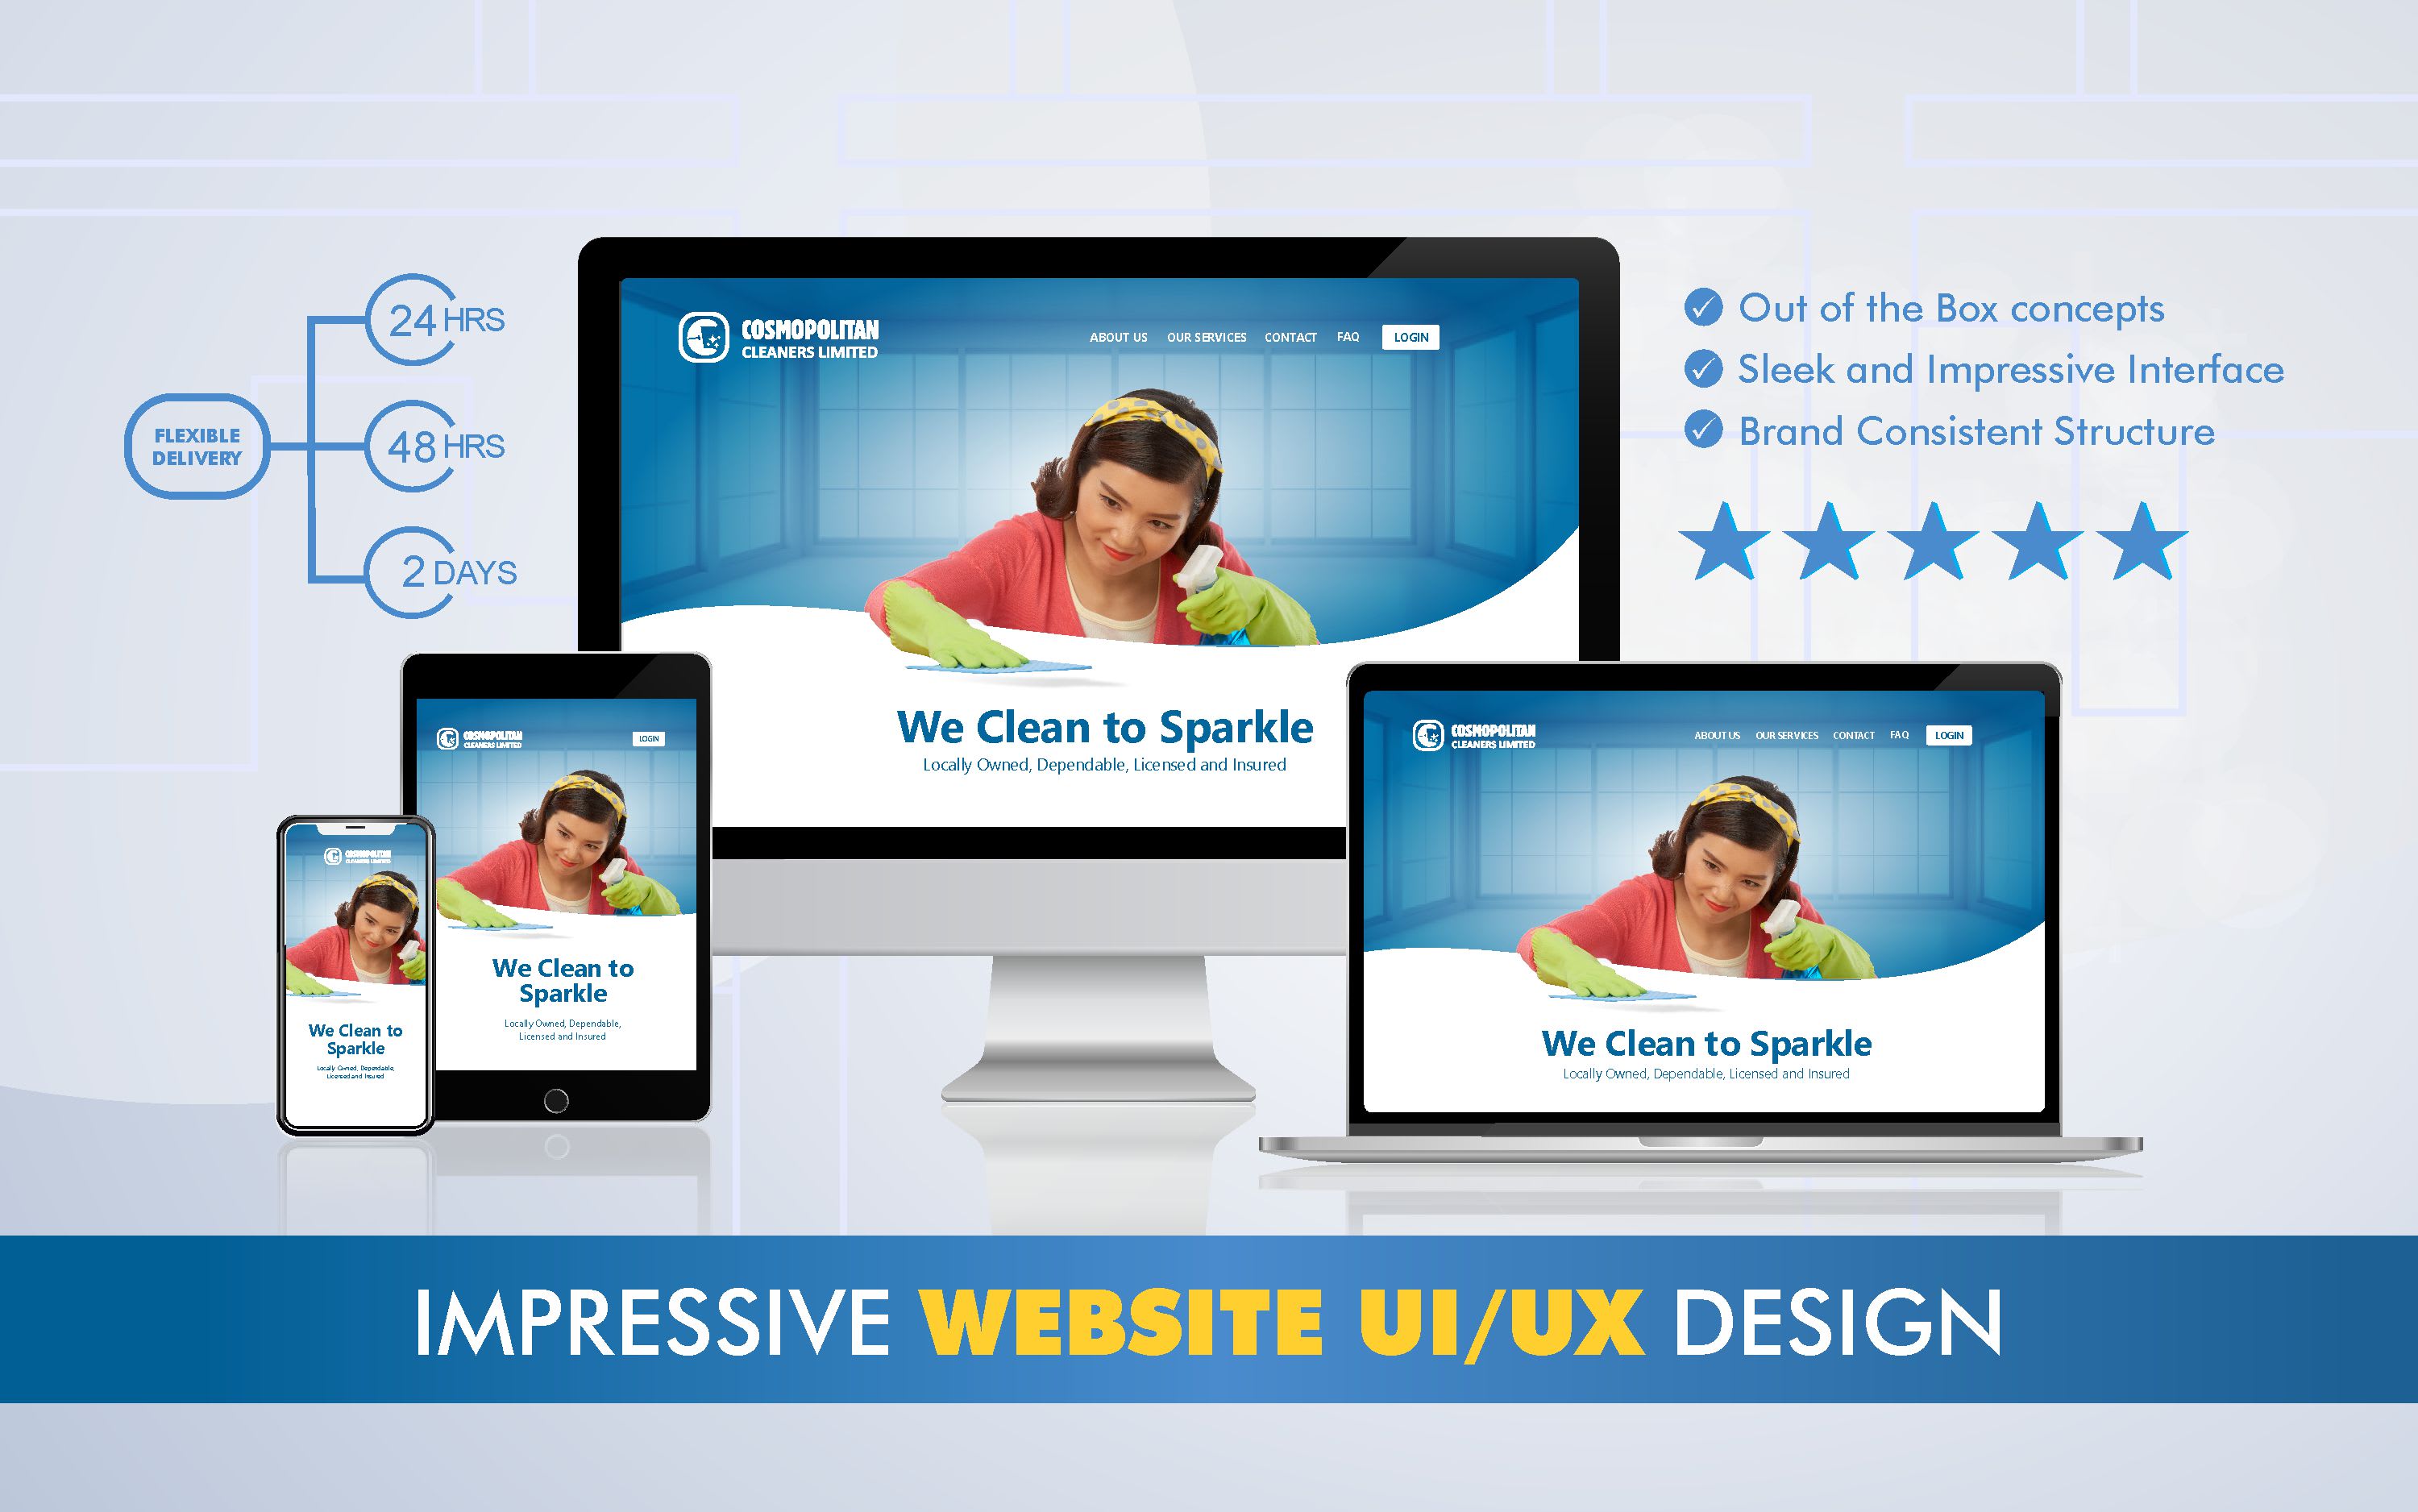 Download Design Impressive Website Design Ui Ux And Mockups By Ben Miller Fiverr